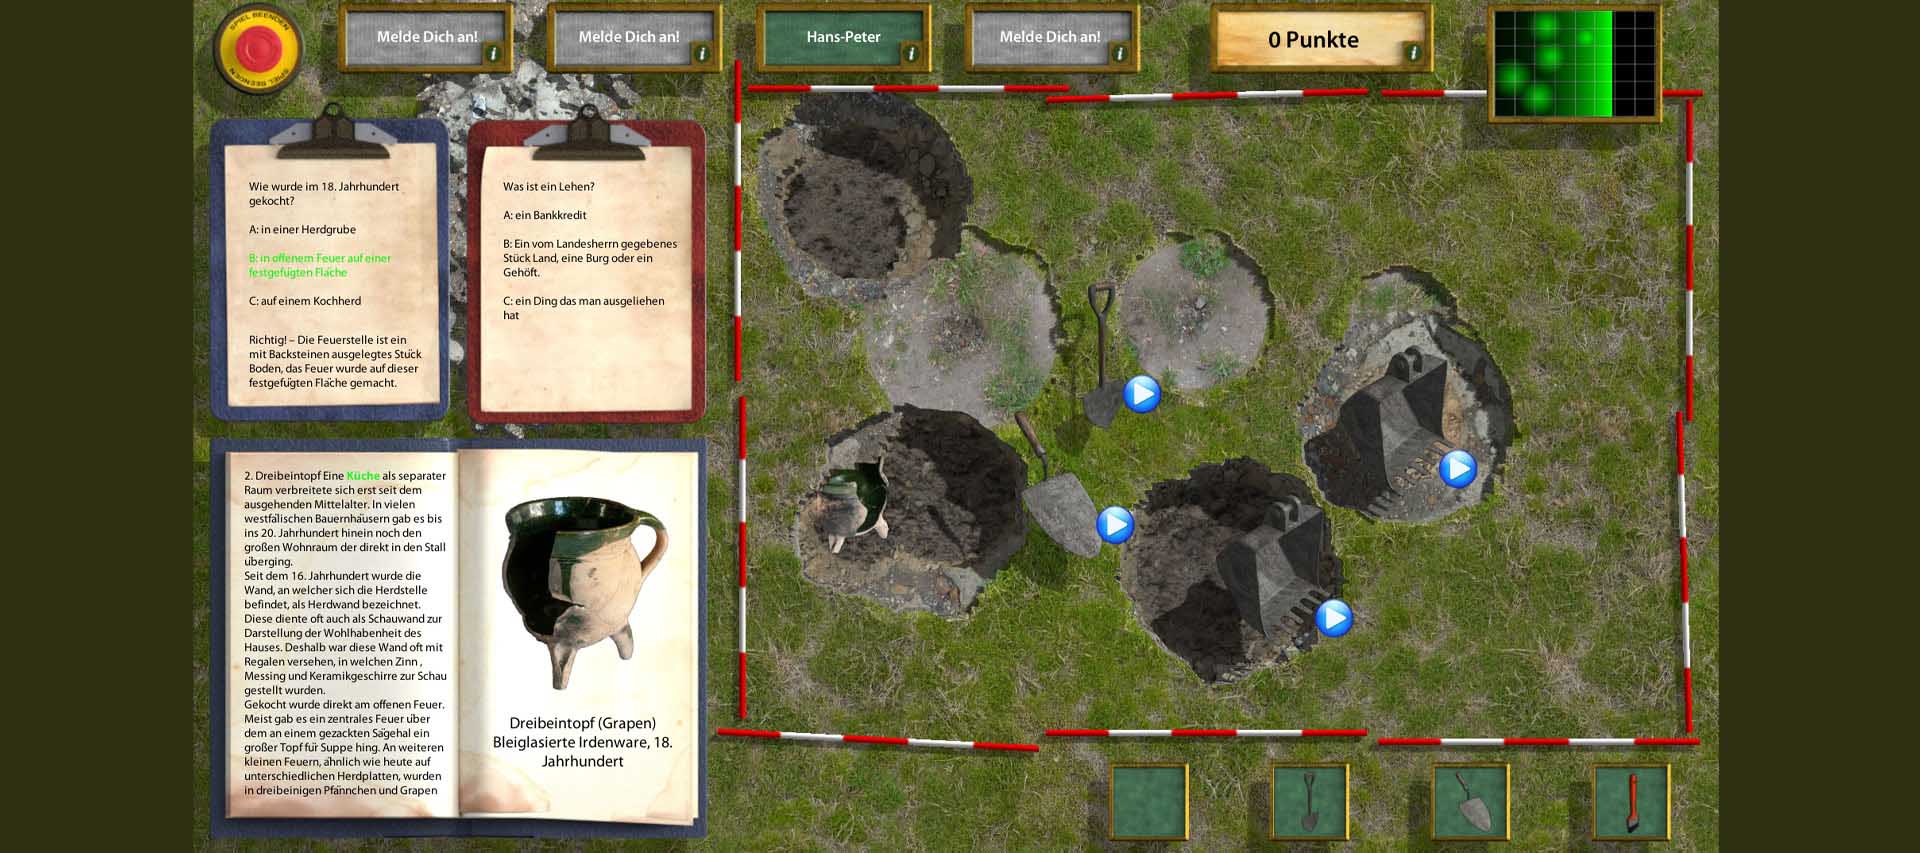 Science Game Archaeologen-Spiel für das Museum Werburg Spenge. Multiuser Game auf Touchtable